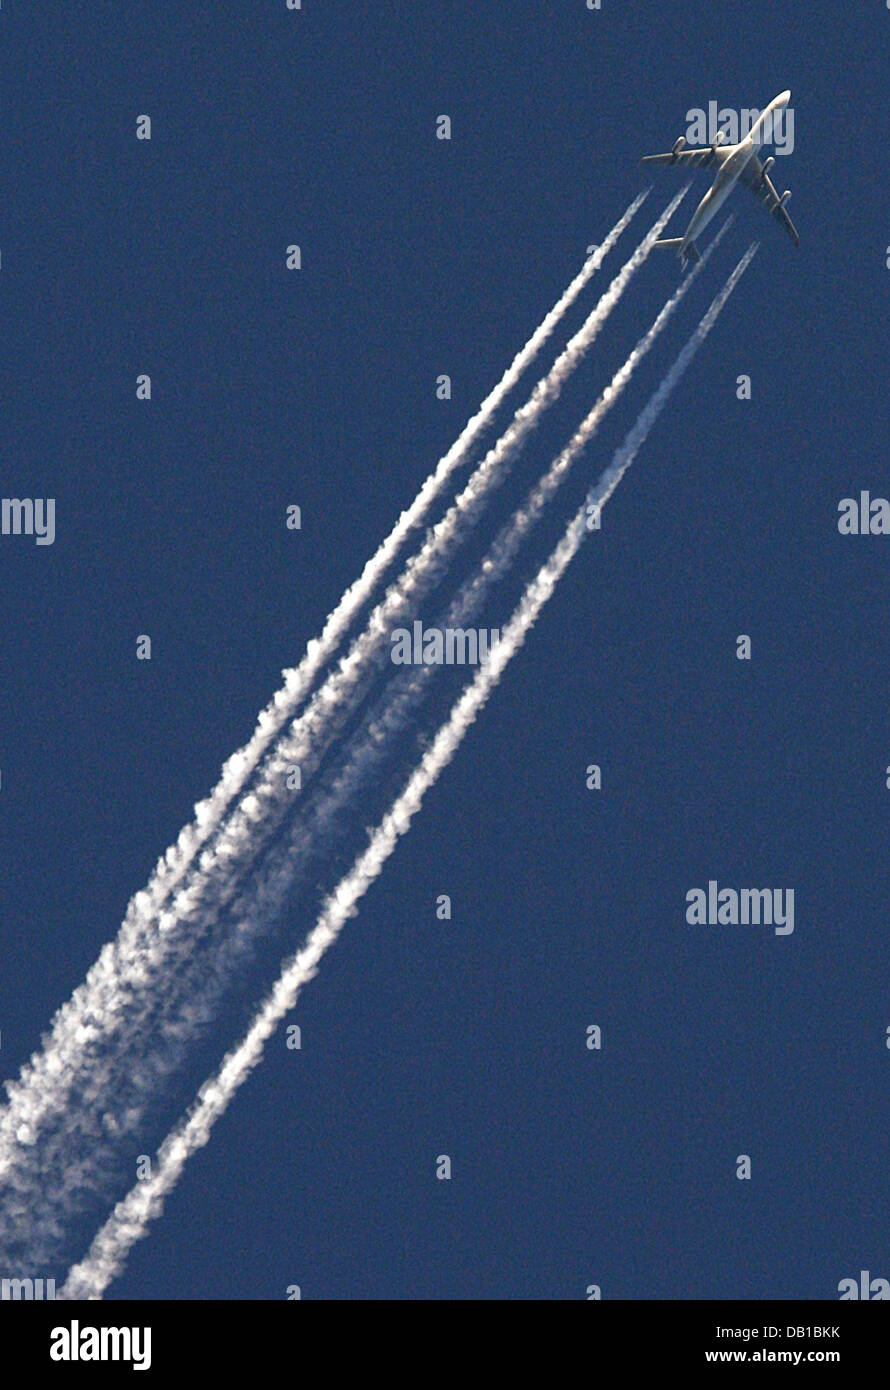 (Dpa) file il file immagine datata 21 maggio 2007 mostra un aeromobile il disegno di un sentiero di vapore nel profondo blu del cielo di Francoforte sul Meno, Germania. Foto: Frank Rumpenhorst Foto Stock